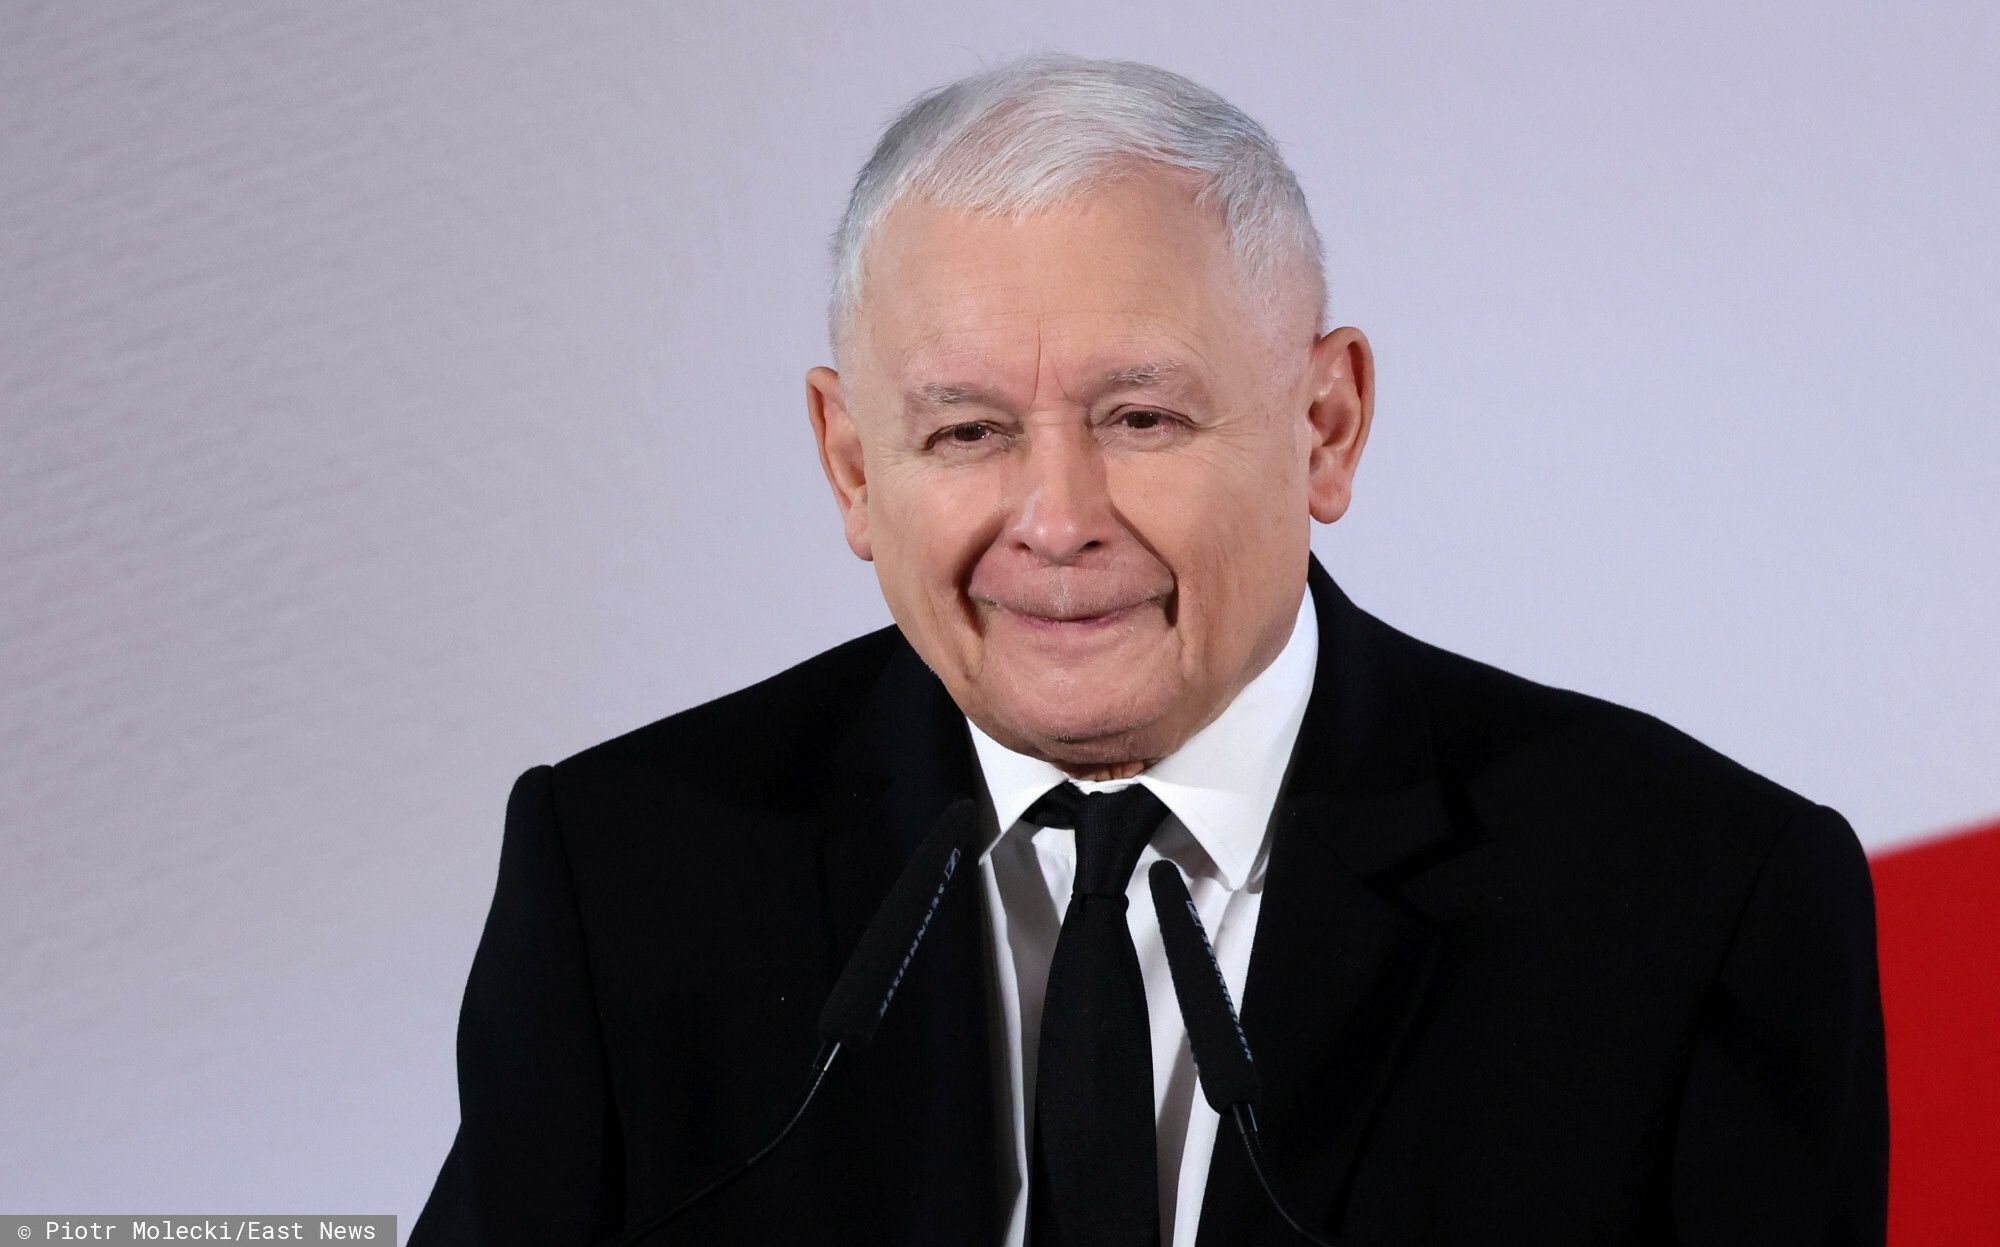 Podczas spotkania z wyborcami w Wadowicach Jarosław Kaczyński tłumaczył swoje osobliwe słowa o kobietach "dających w szyję".